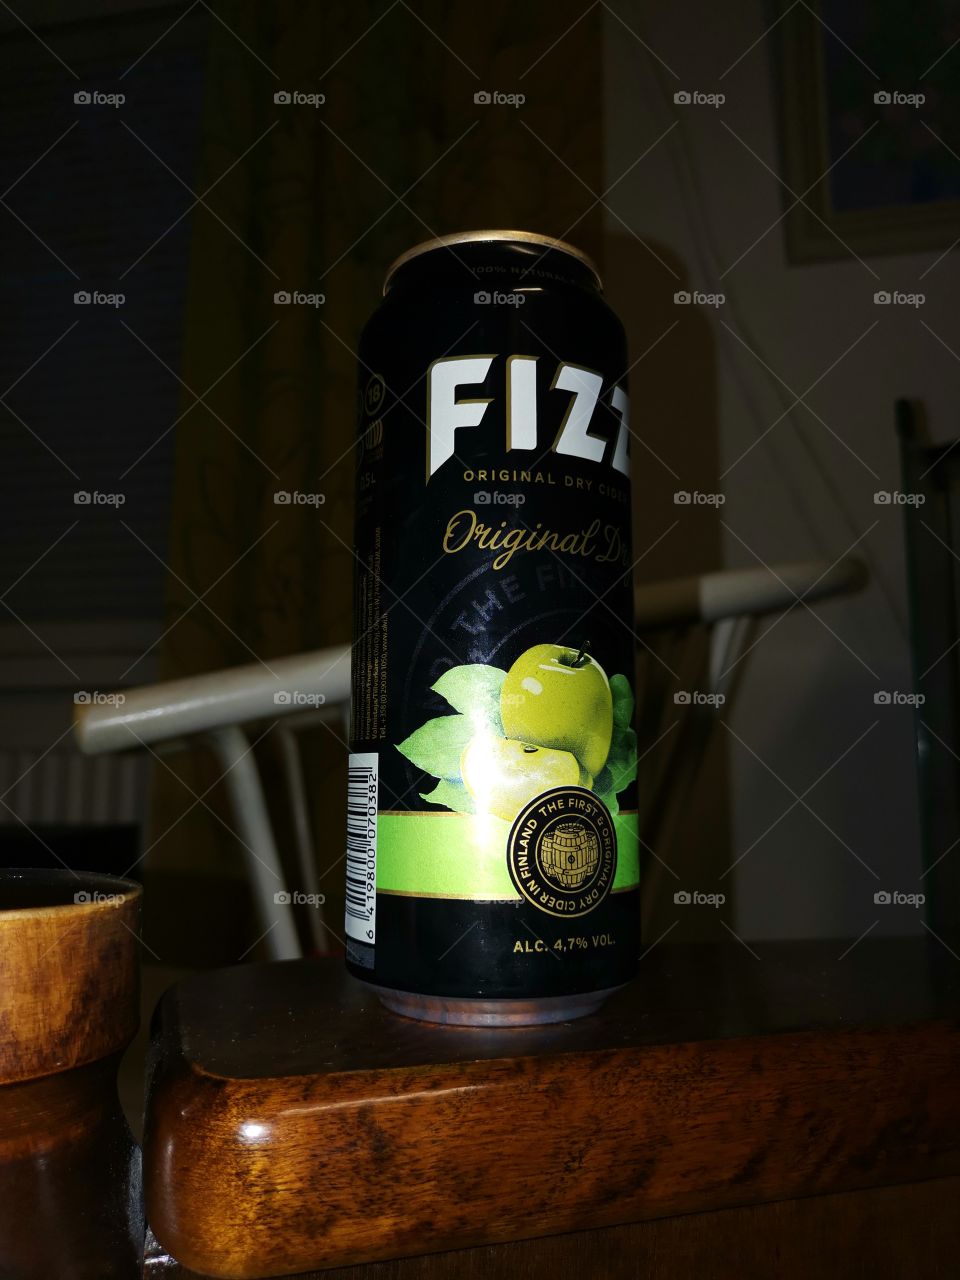 Fizz orginal dry cider